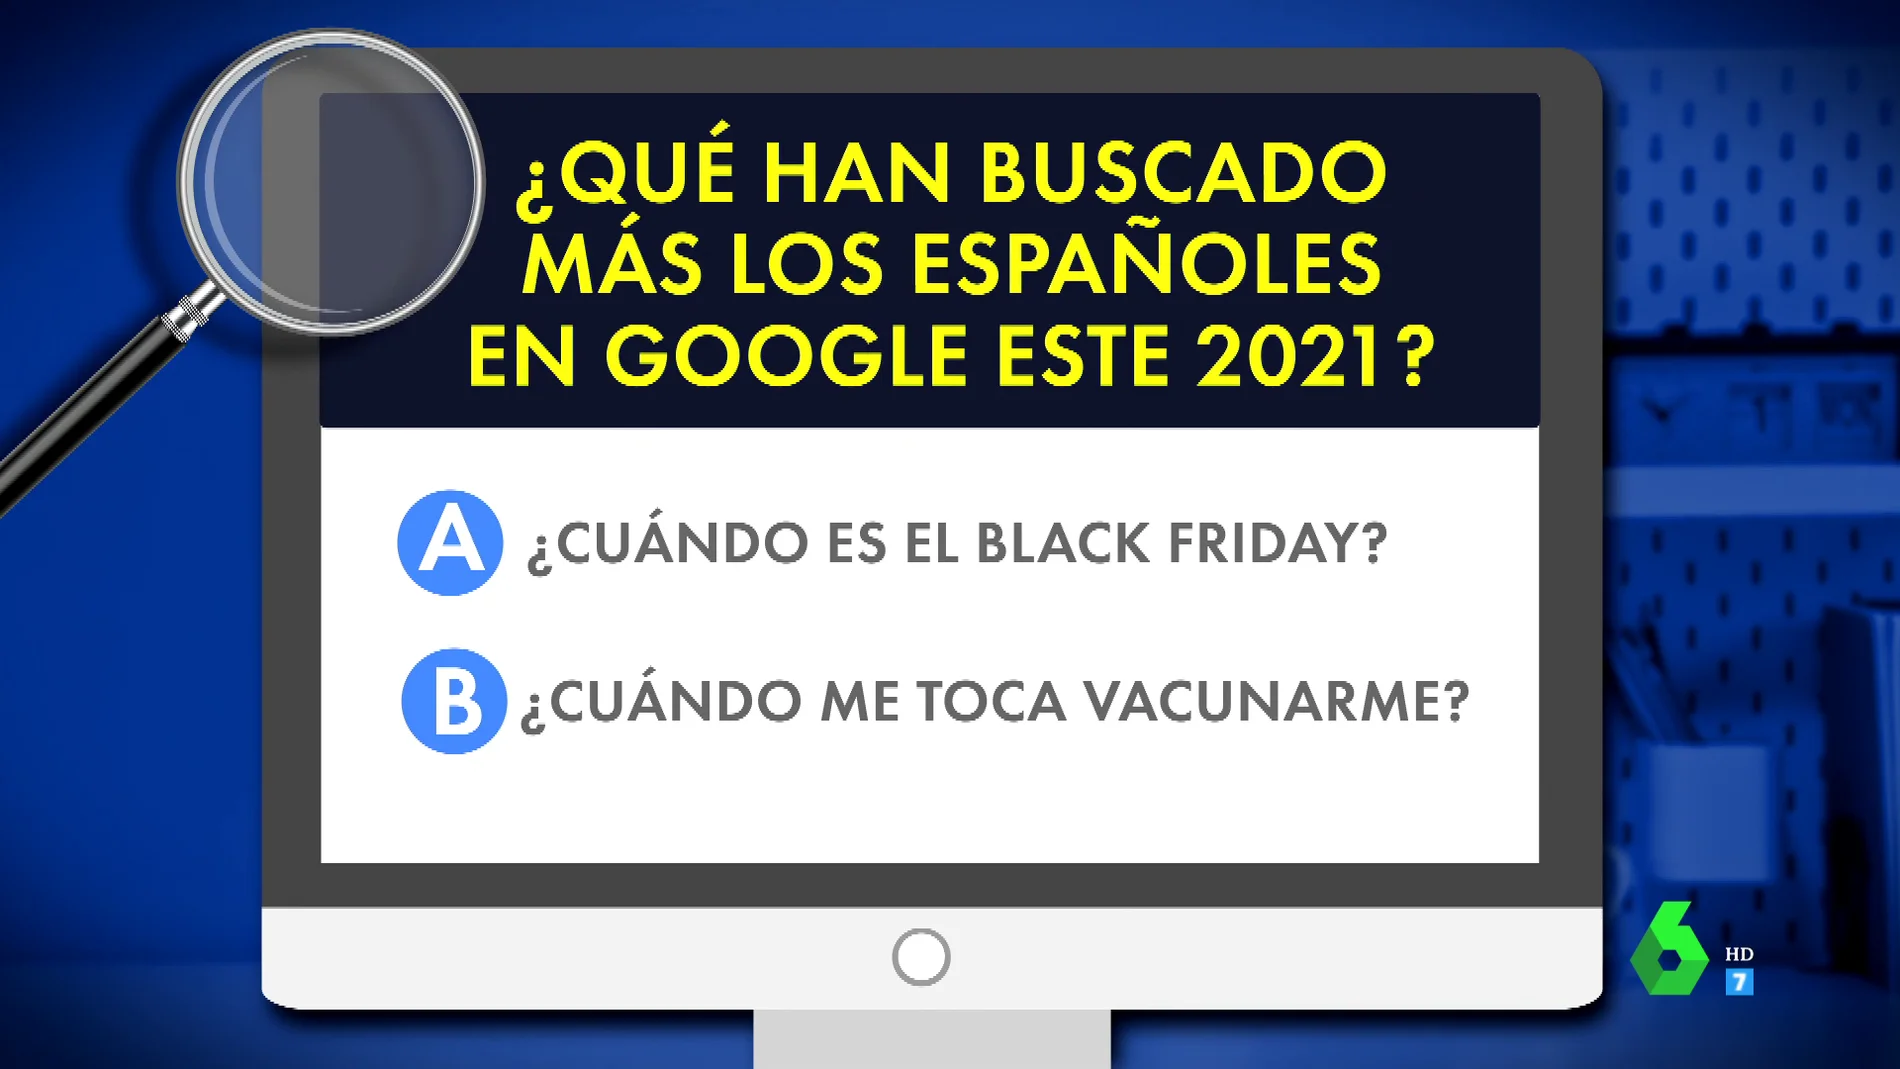 Esto es lo que más hemos buscado los españoles en Google en el año 2021